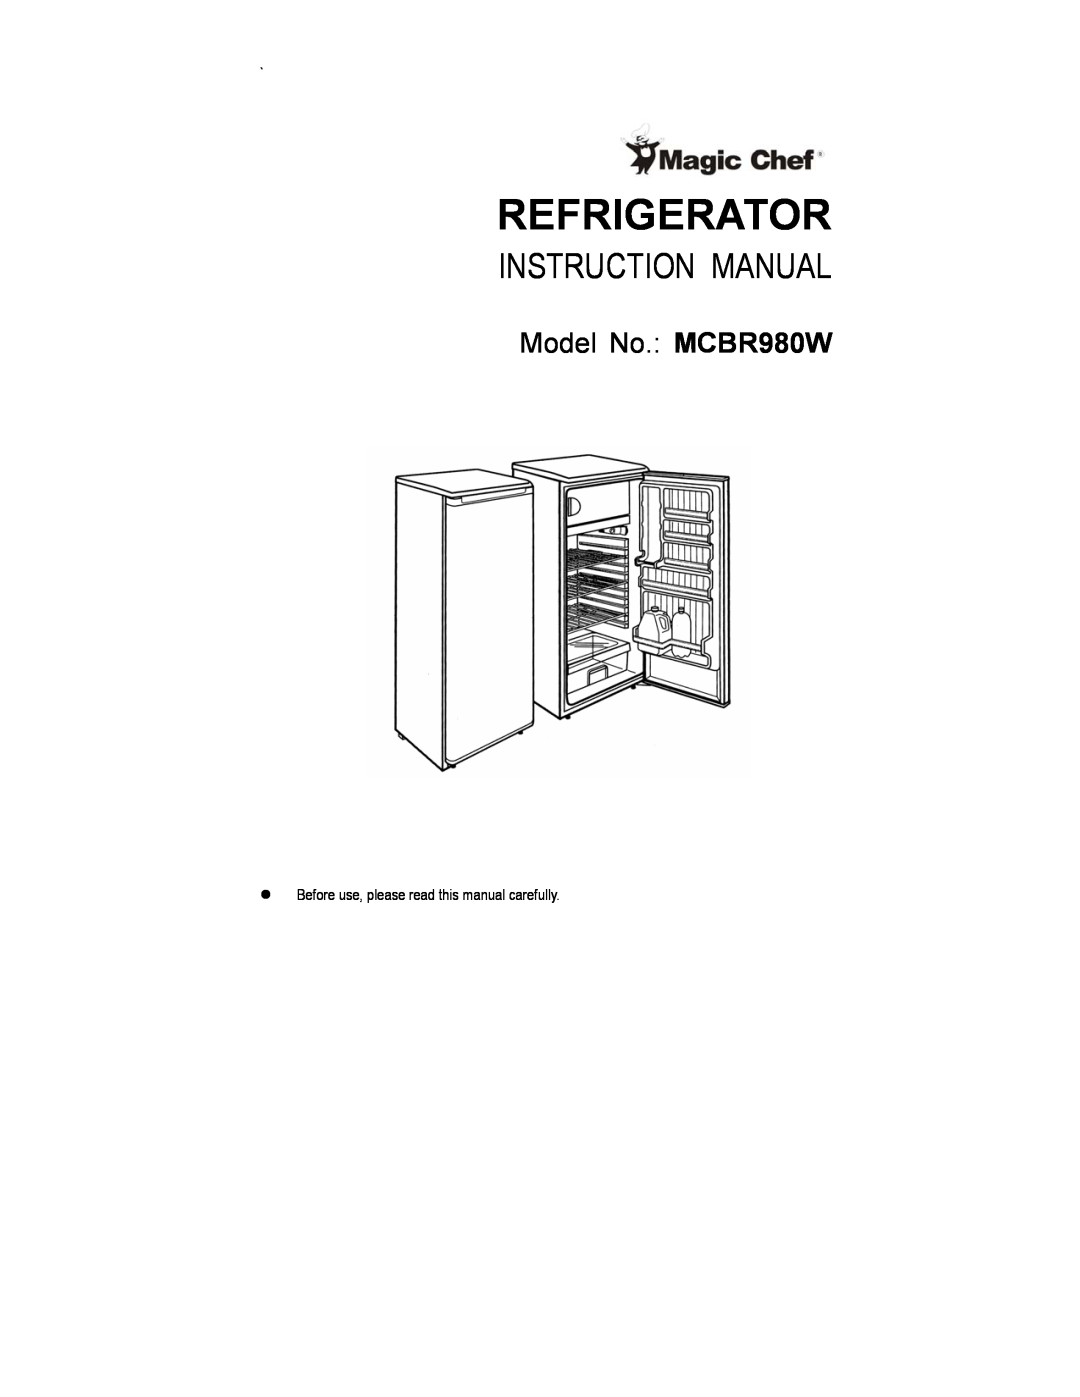 Magic Chef instruction manual Refrigerator, Model No. MCBR980W 